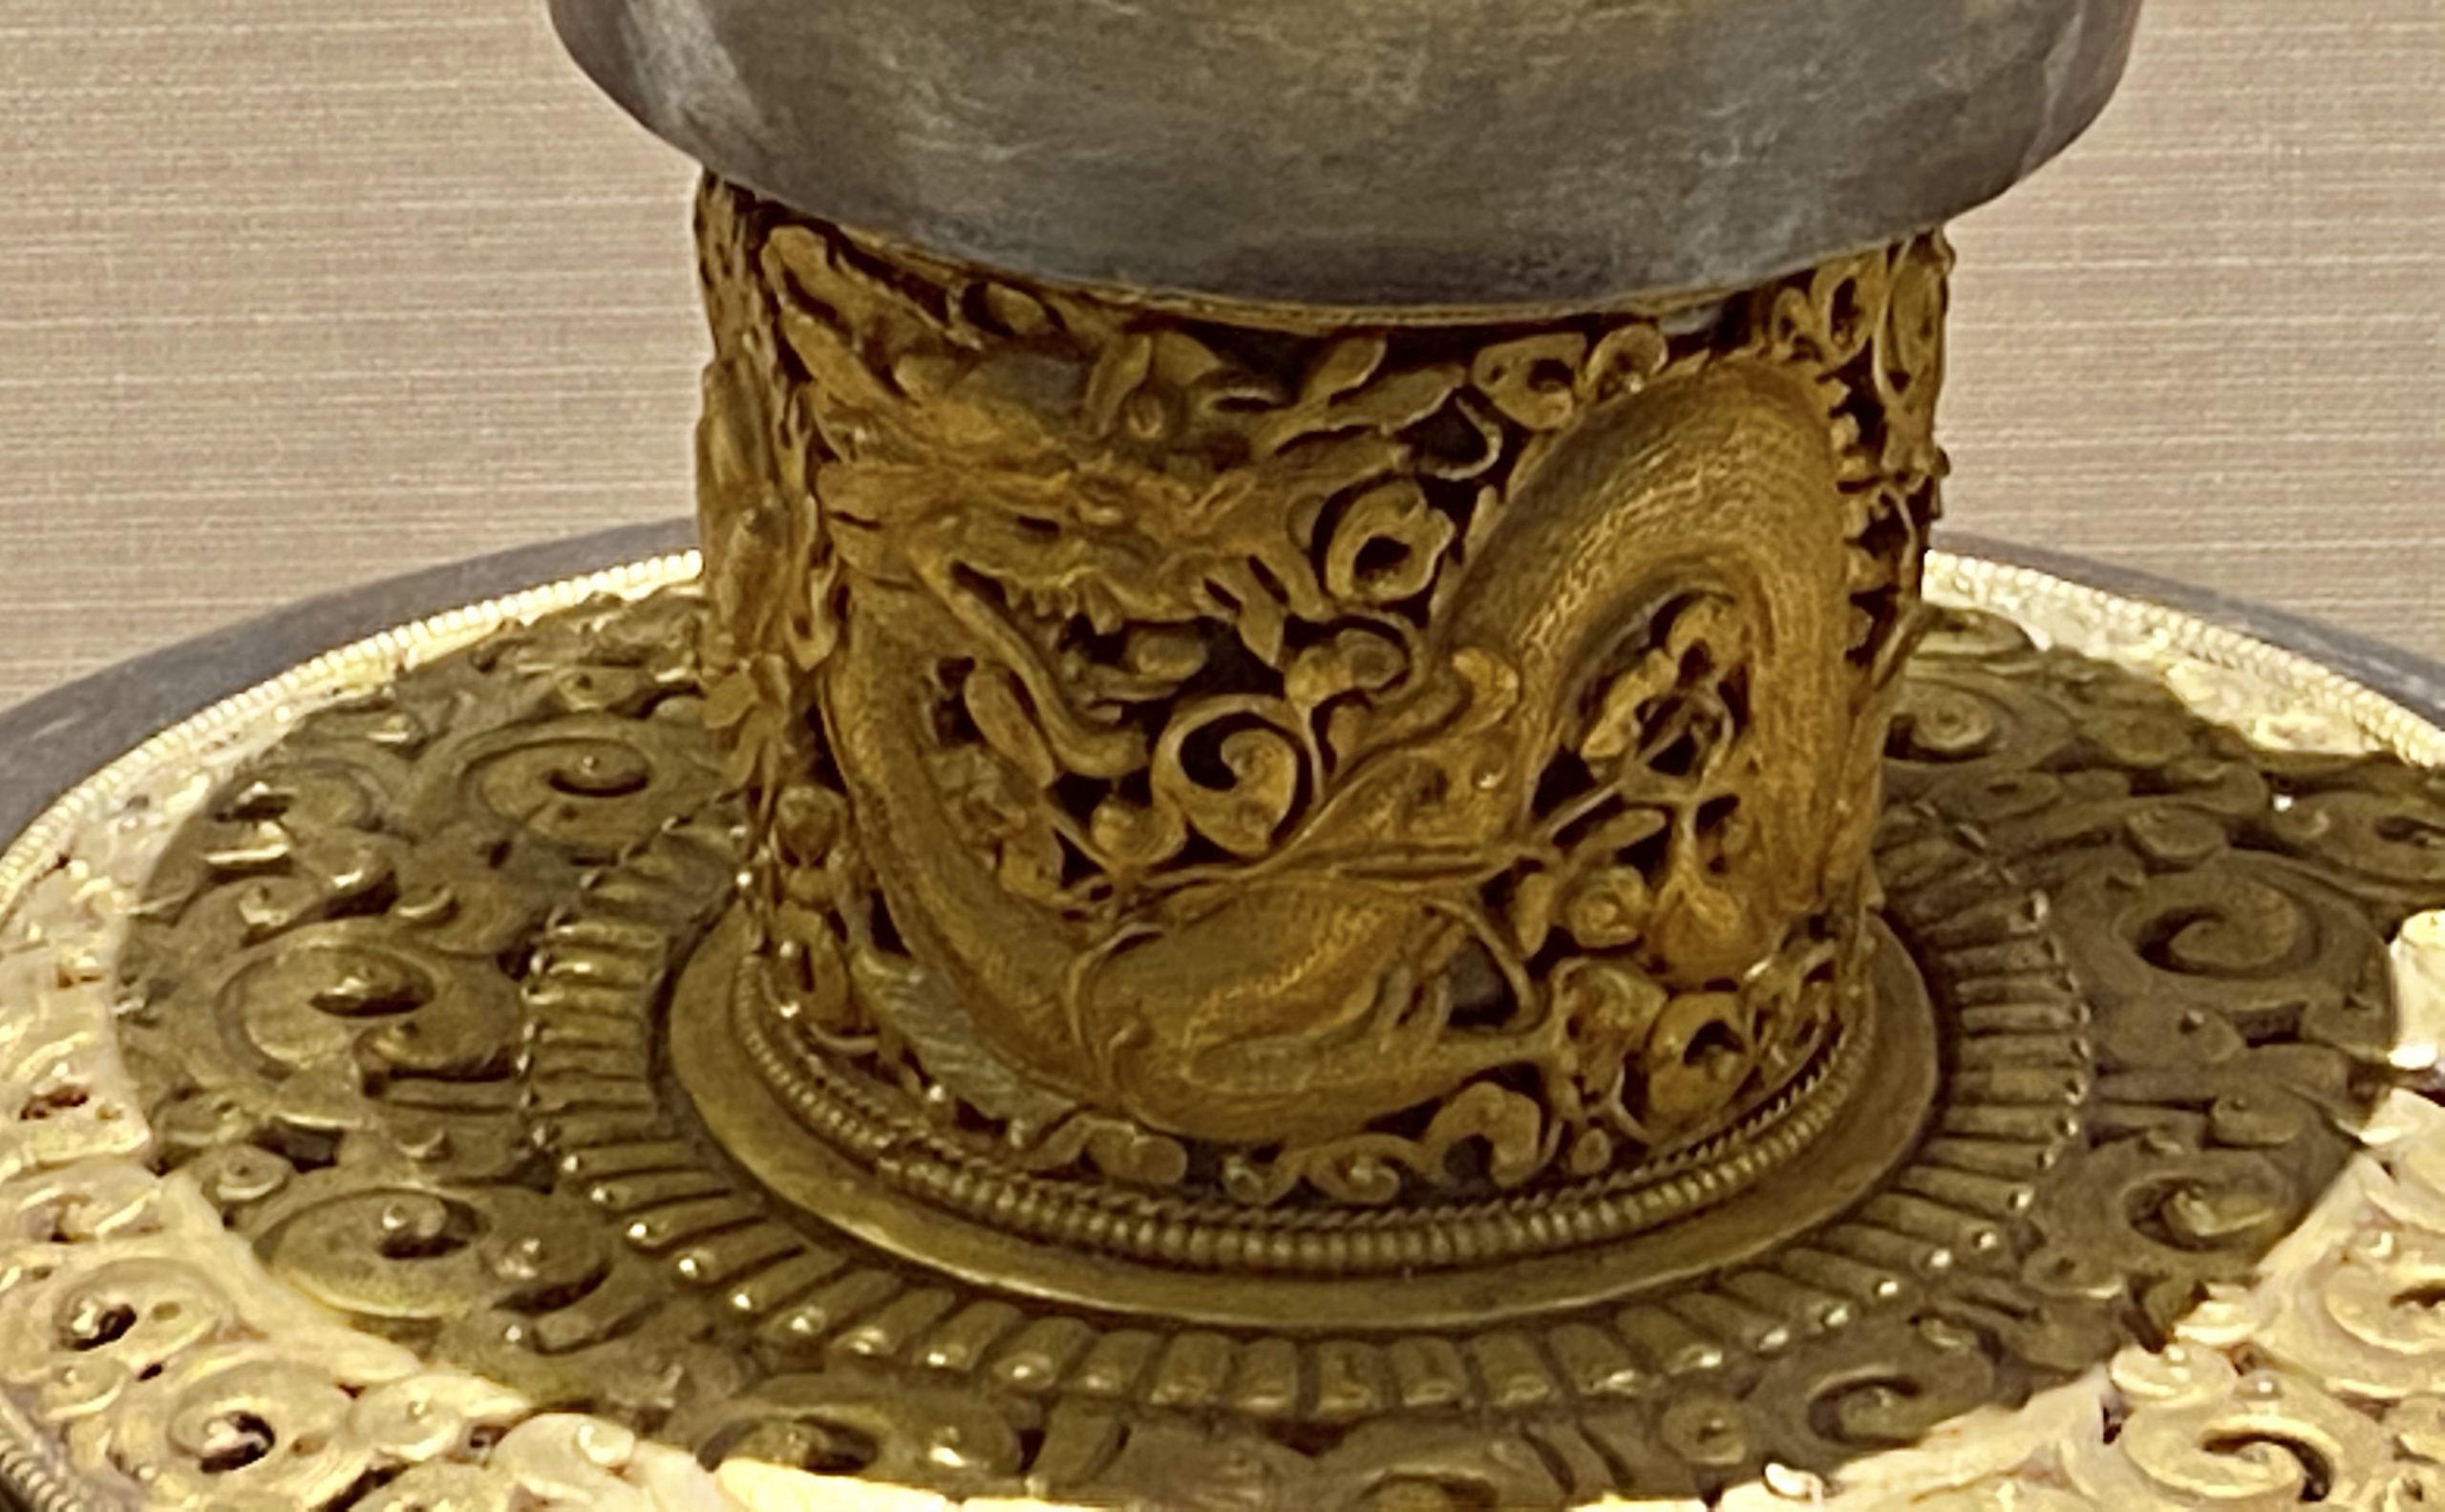 銀酥油壺-現代-巡回特別展【天歌長歌-唐蕃古道】-四川博物館